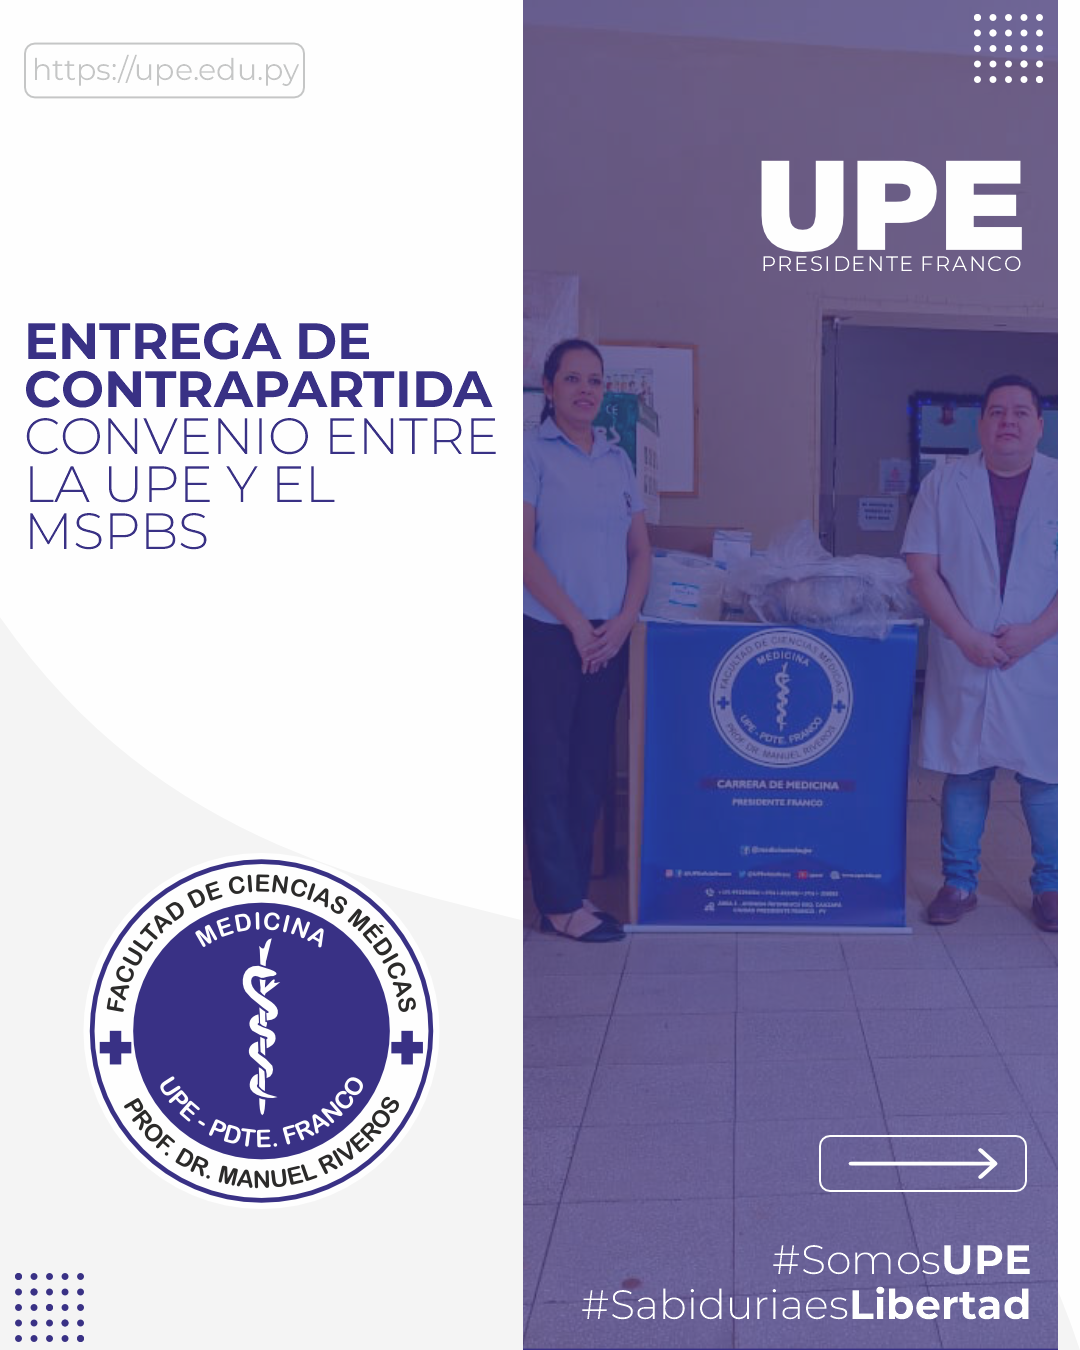 La UPE Contribuye al Sector de la Salud con entrega de Contrapartida